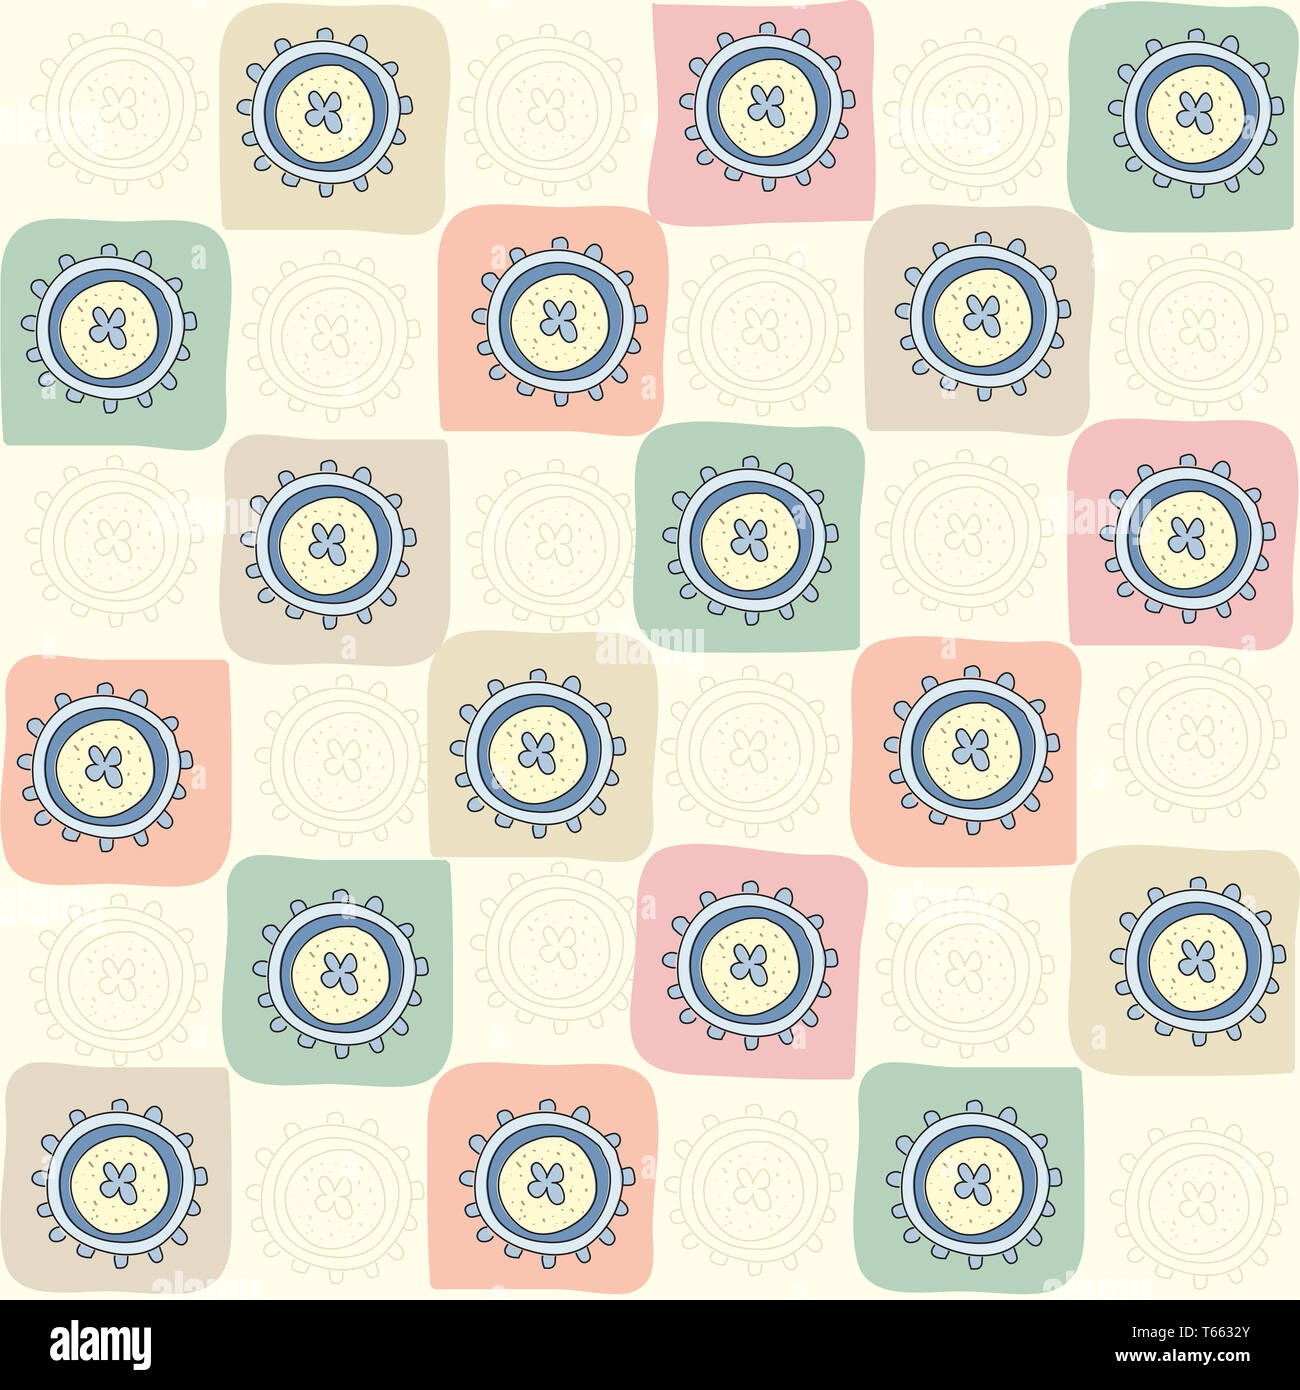 childish seamless abstract pattern Stock Photo